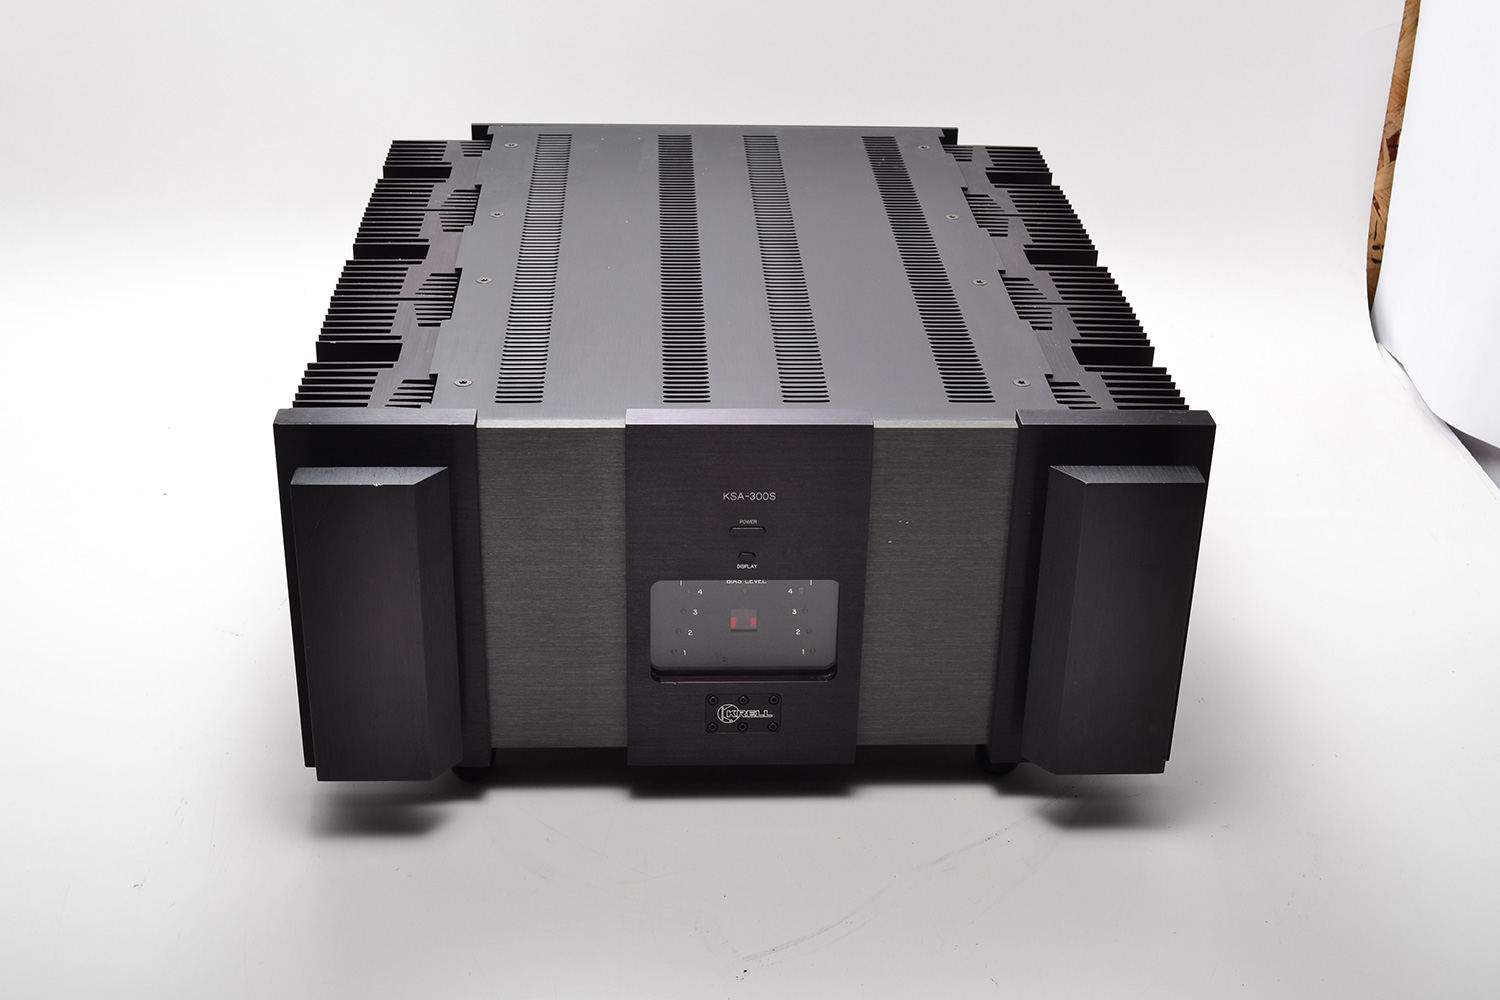 Krell KSA 300s – High End Stereo Equipment We Buy